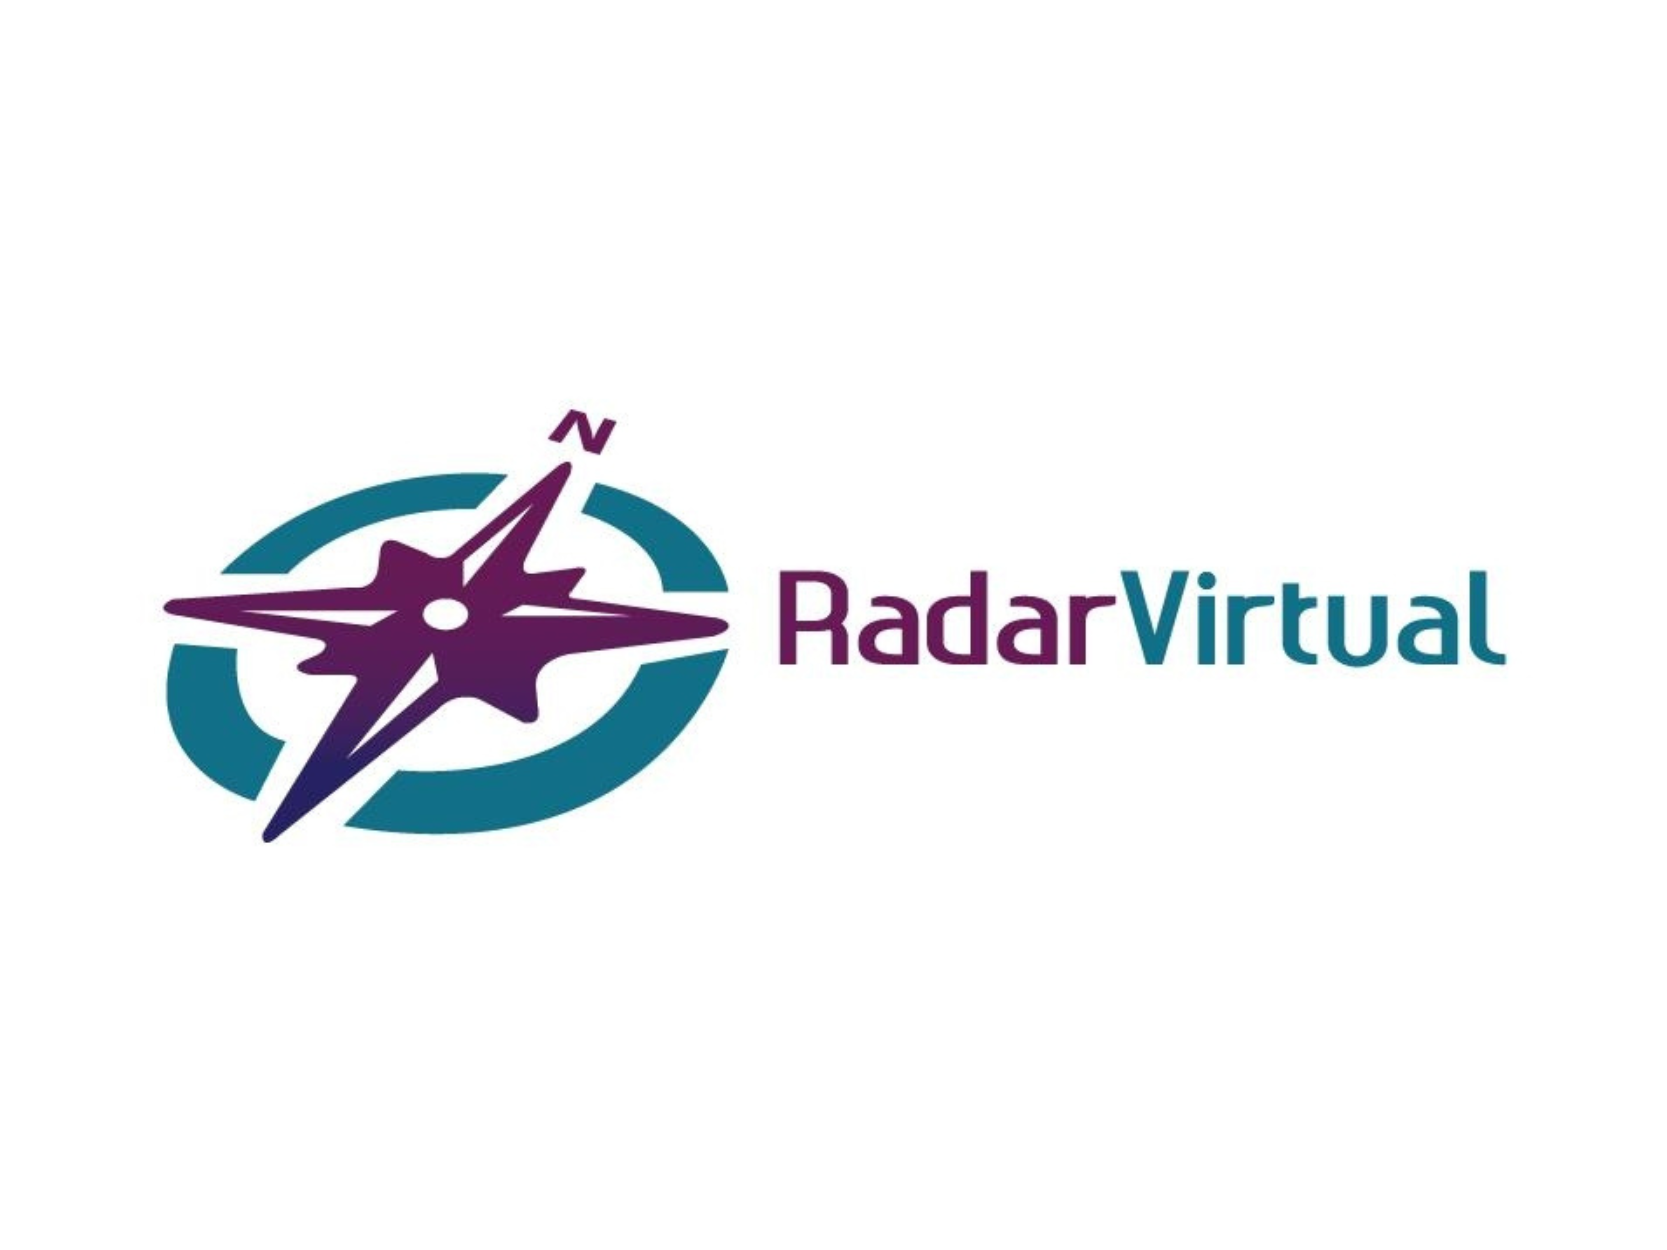 RadarVirtual